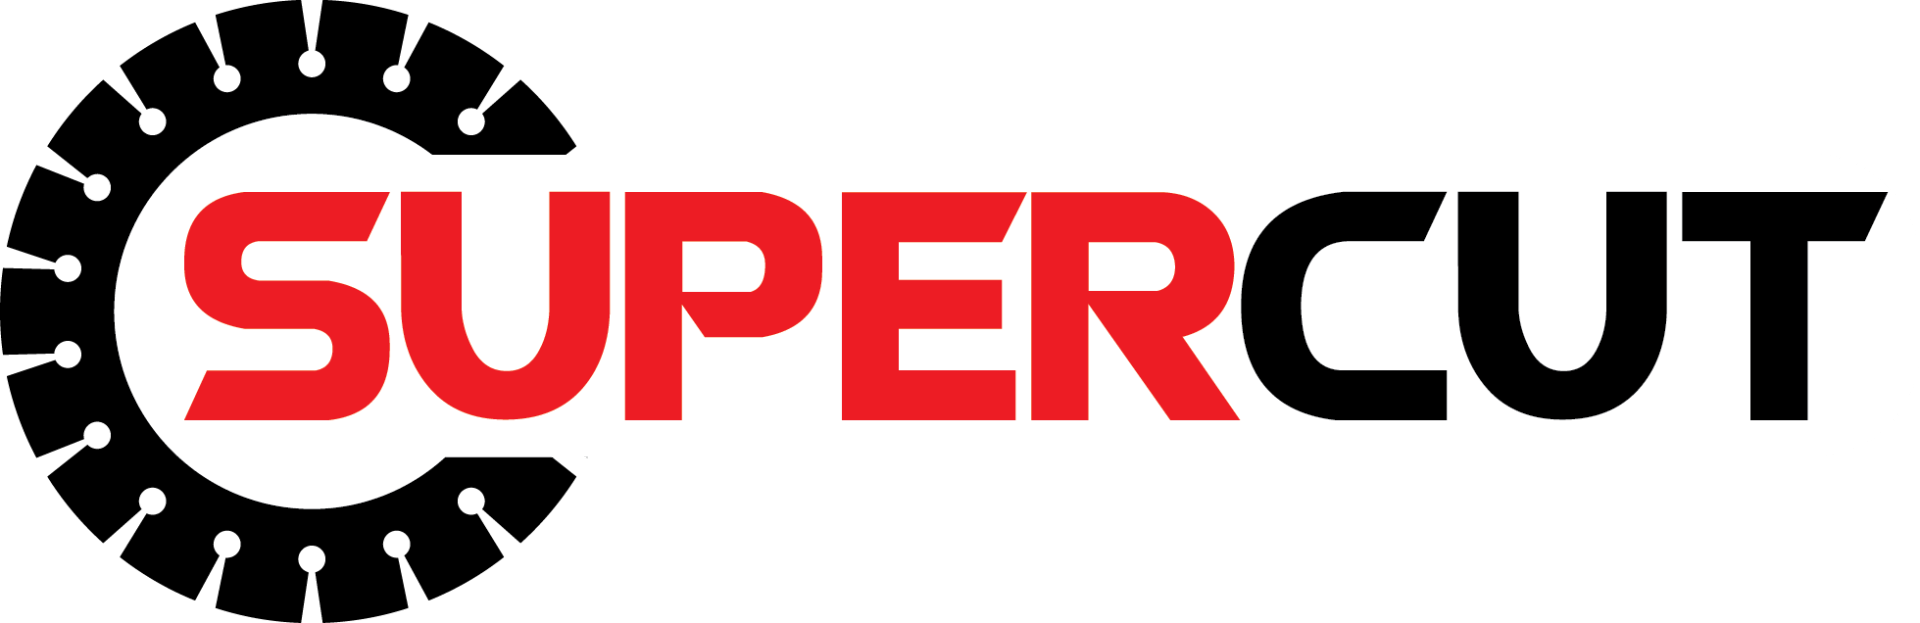 Supercut logo